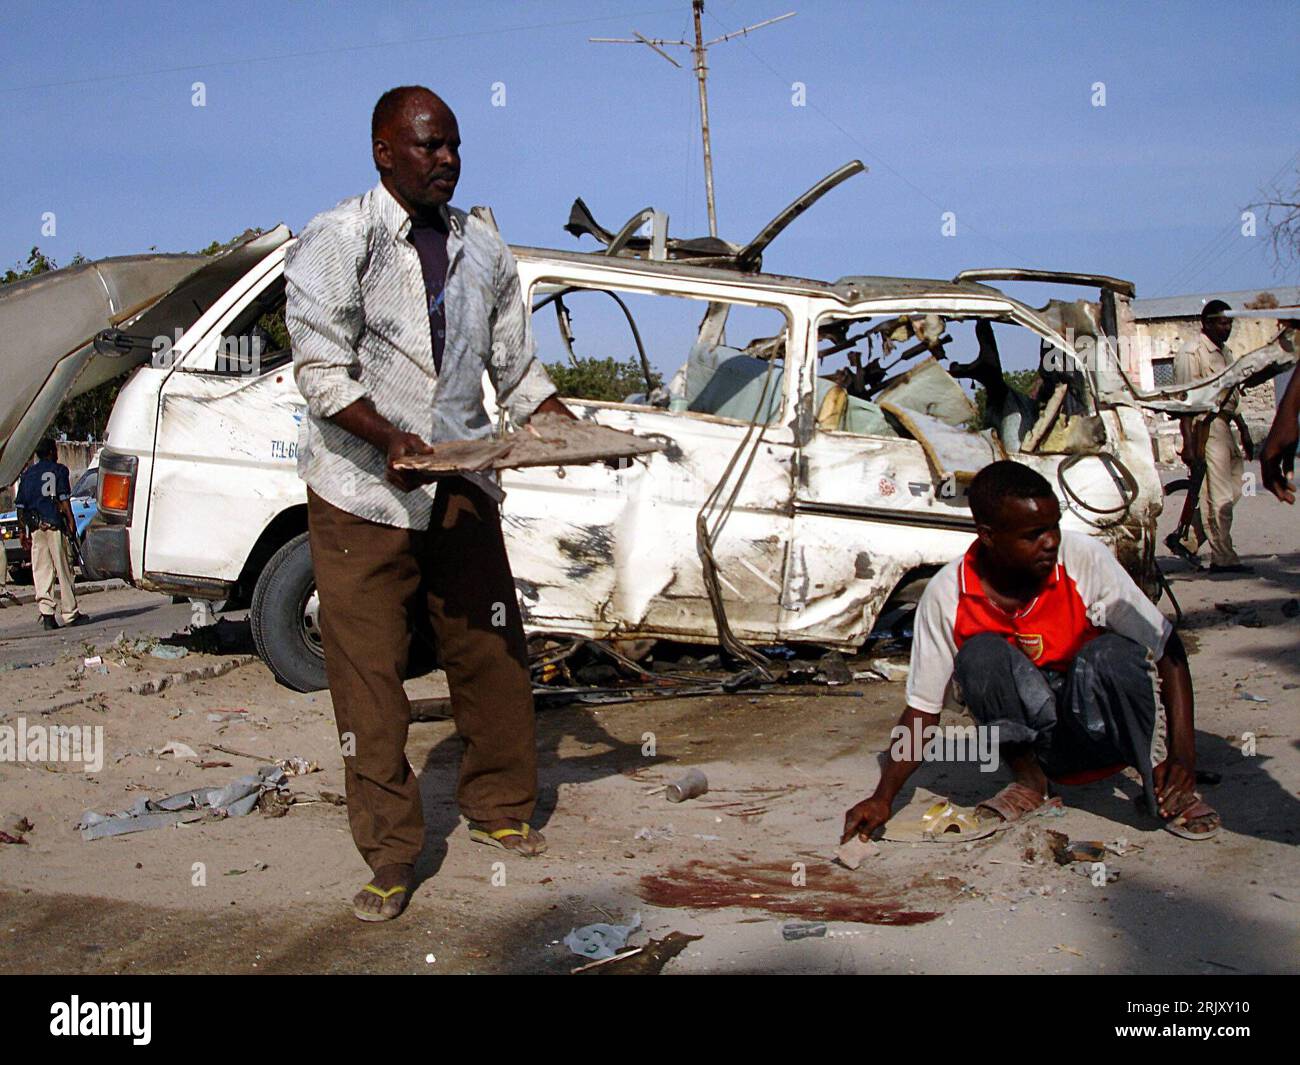 Bildnummer: 52375360  Datum: 03.02.2008  Copyright: imago/Xinhua Einheimische beseitigen die Schäden eines Bombenanschlags in Mogadischu, Somalia  PUBLICATIONxNOTxINxCHN , Personen , premiumd; 2008, Mogadischu, Anschlag, Bombenanschlag, Terror, Terroranschlag, Attentat, Bombenattentat, Zerstörung, Schaden, Zerstörungen, Gesellschaft, Einheimischer, , Wrack, Autowrack; , quer, Kbdig, Gruppenbild,  , Gesellschaft, Afrika Stock Photo